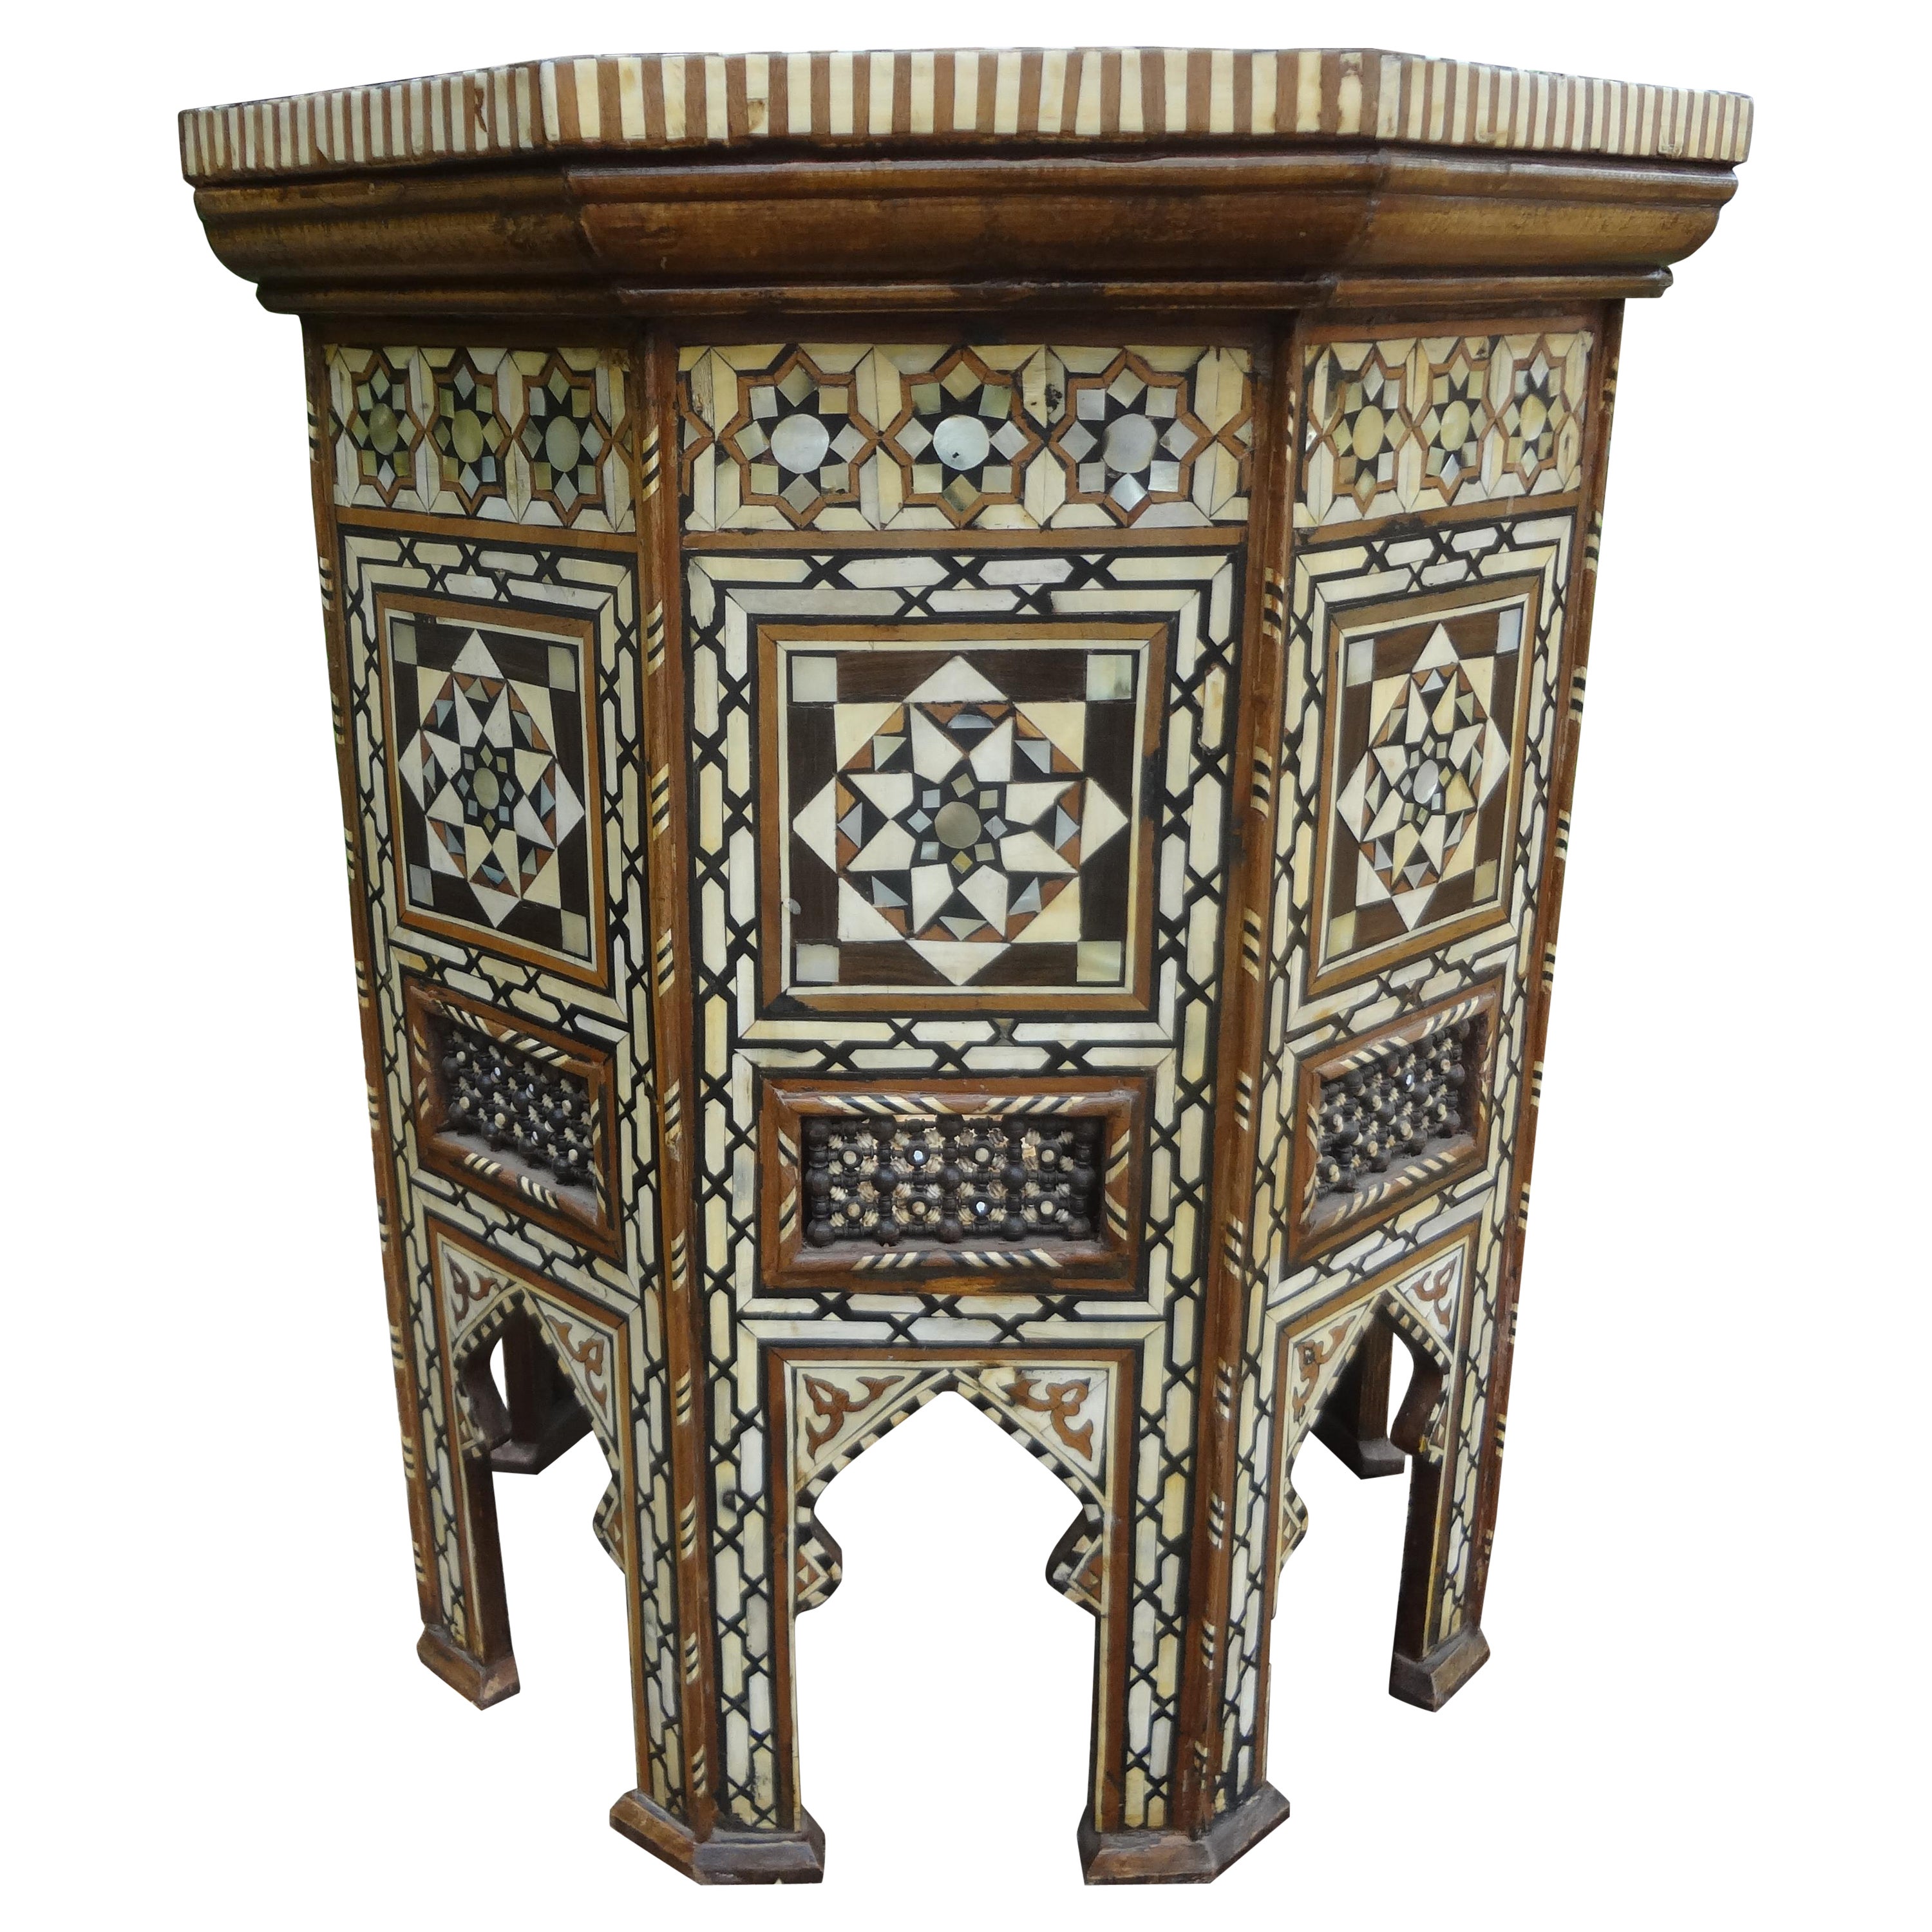 Grande table octogonale marocaine ancienne de style arabesque incrustée